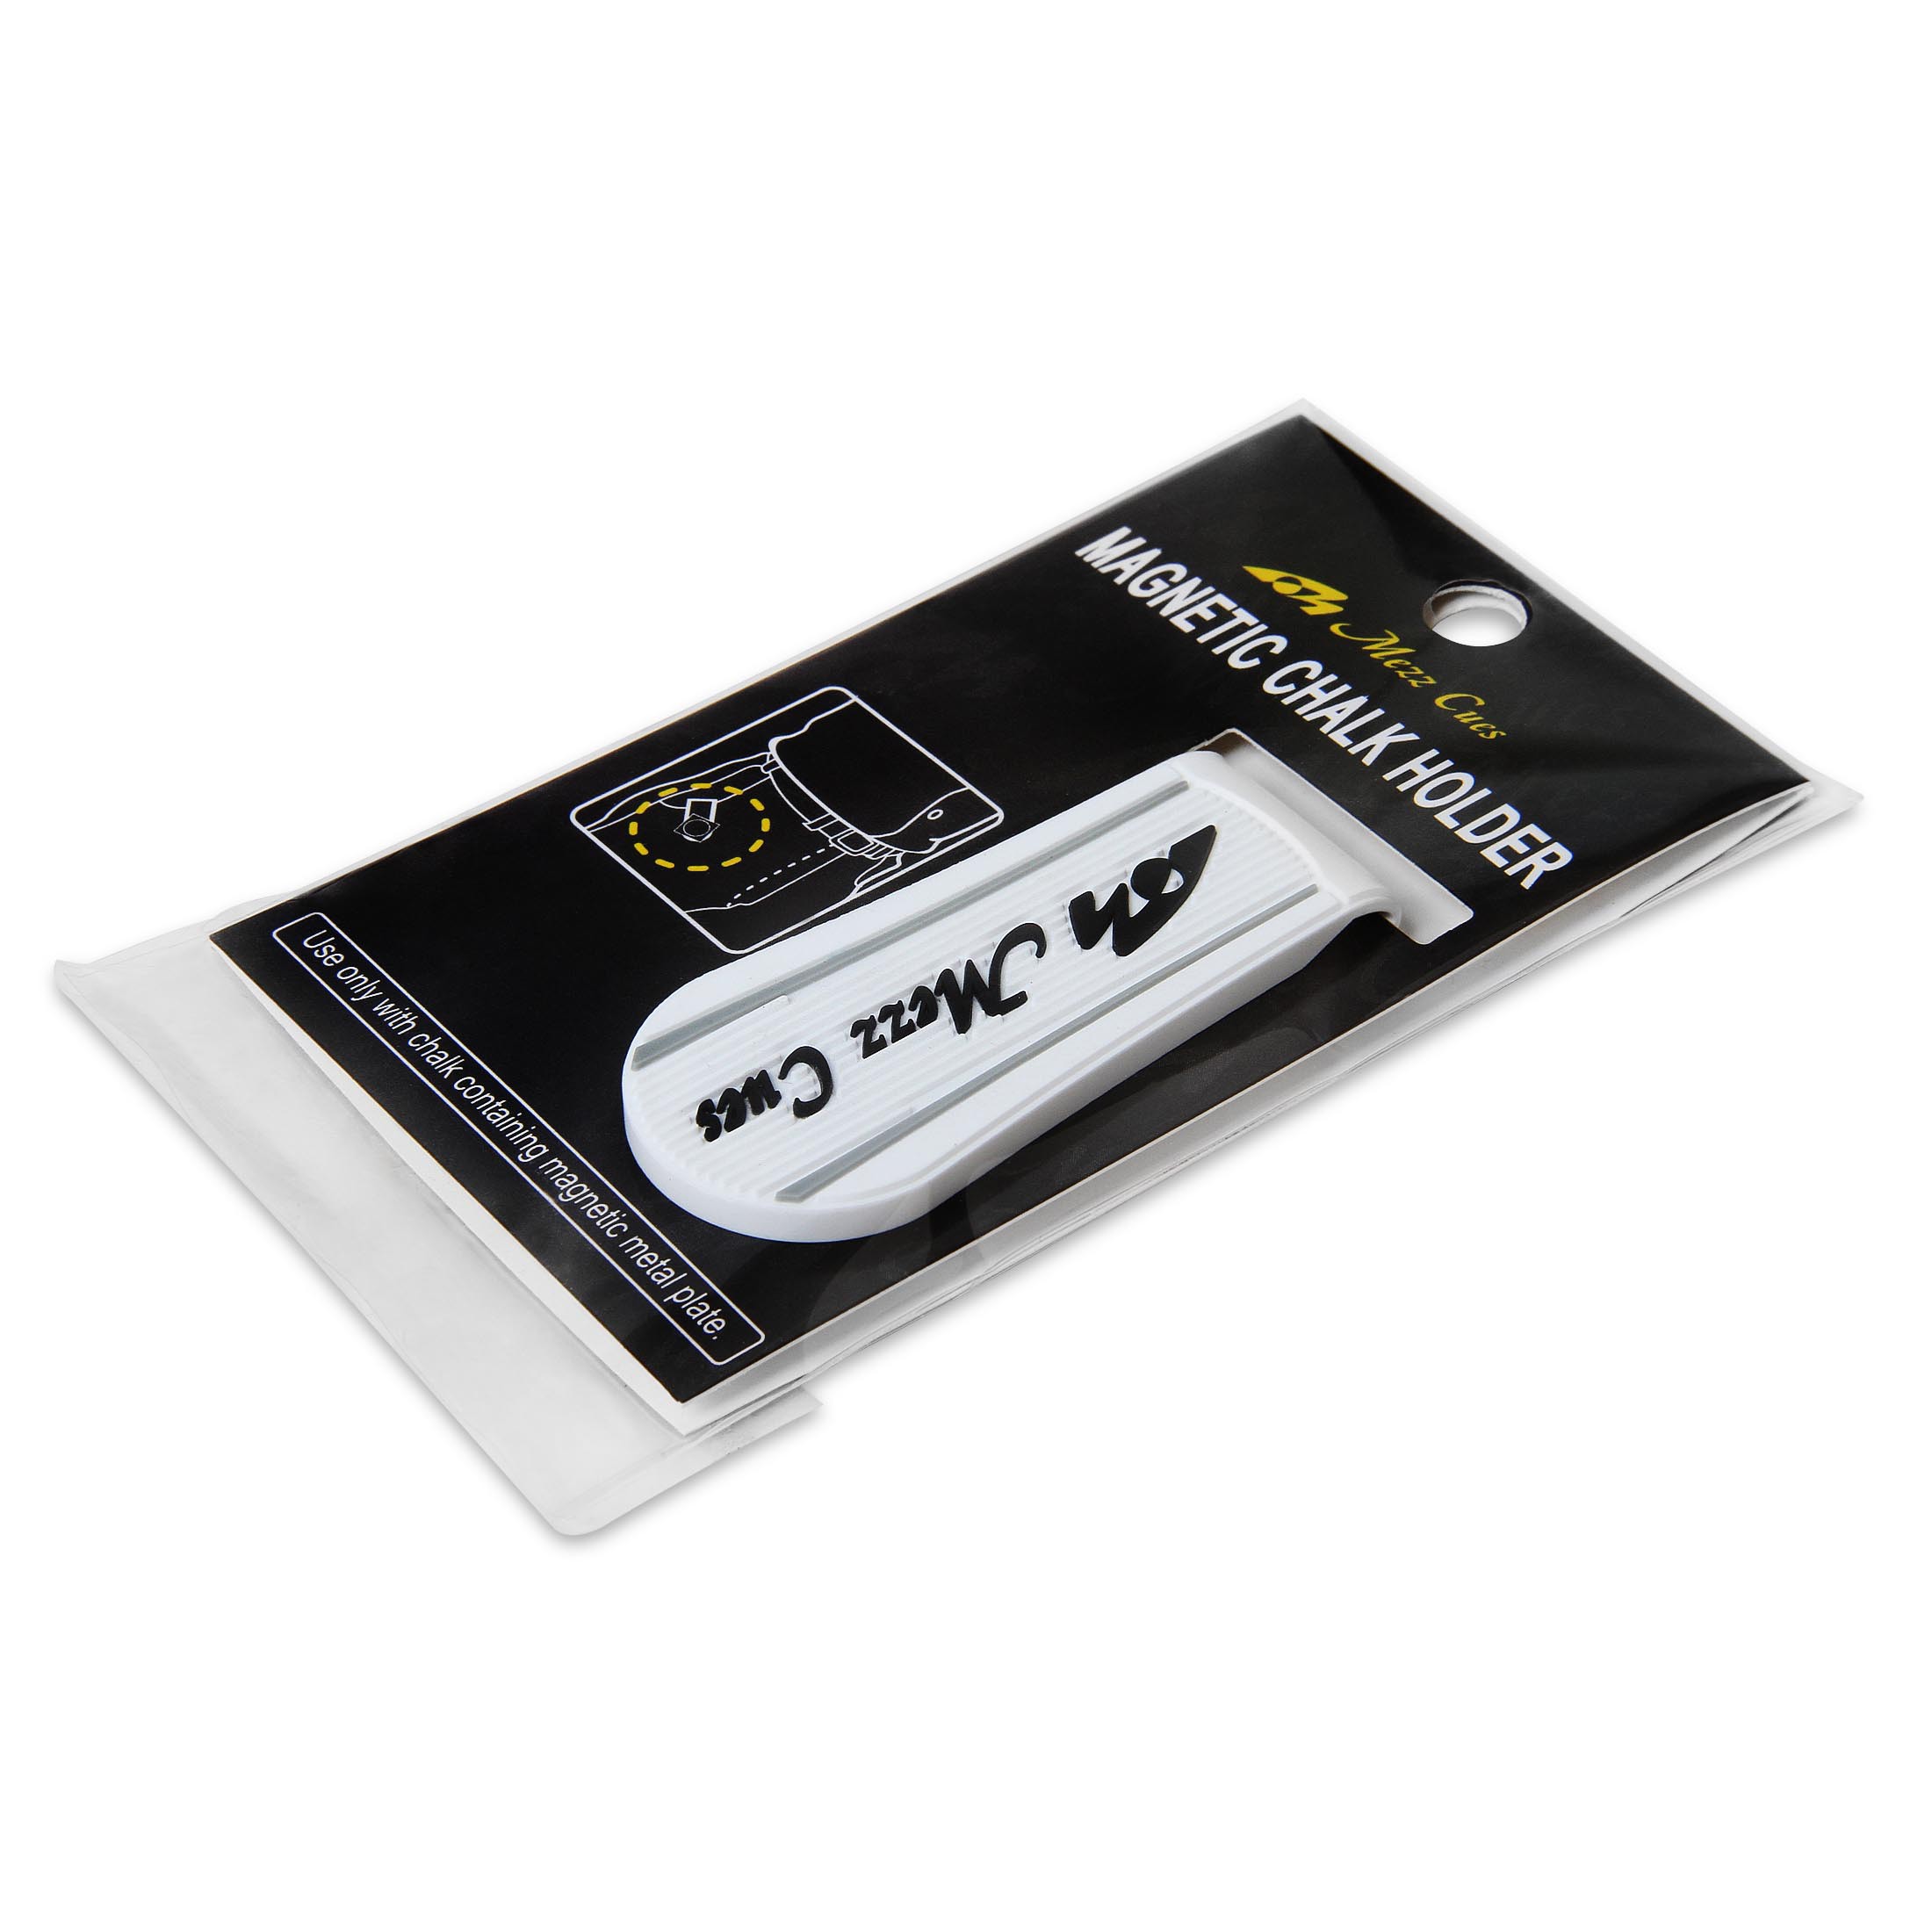 Держатель для мела Mezz Magnetic Chalk Holder MPH-WK белый/черный